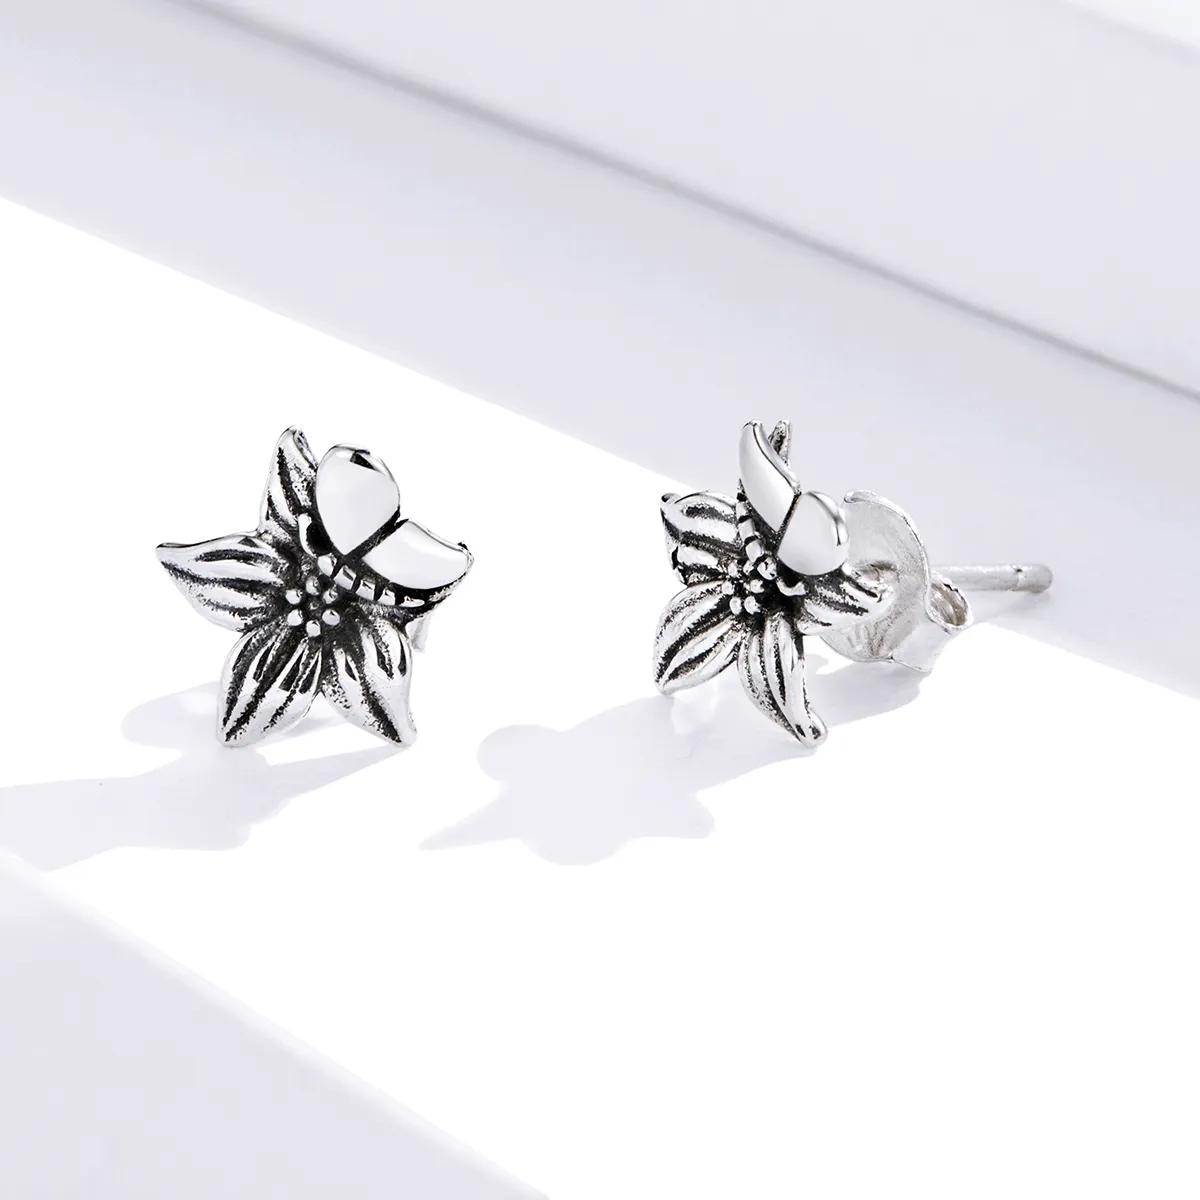 Pandora Style Silver Butterfly Love Flowers Stud Earrings - SCE887